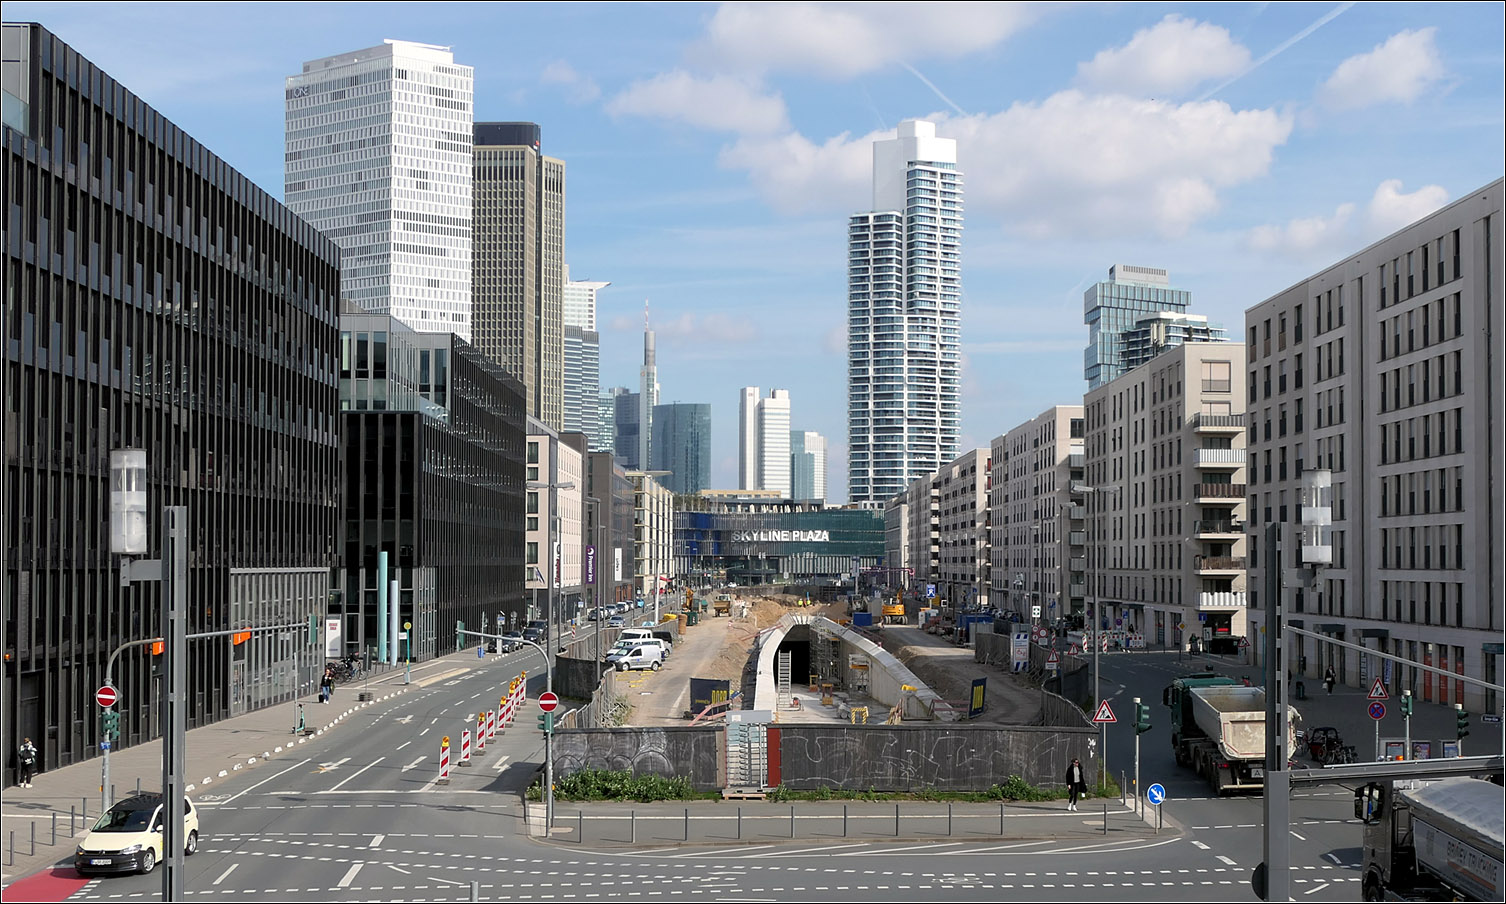 Ein neues U-Bahnportal - 

... in Frankfurt. Durch das Europaviertel soll in Zukunft die Linie U5 verkehren. Diese zweigt am Hauptbahnhof von der U4 ab um über die U-Station Güterplatz in der Europa-Allee über eine Rampe die Oberfläche zu erreichen. Von hier geht es oberirdische weiter im breiten Mittelstreifen der Europa-Allee. Der Europagarten wird wie auch der Autoverkehr im Tunnel unterfahren. Dieser Tunnel ist schon erstellt. Die Fertigstellung verzögert sich um zwei Jahre. Eigentlich sollten die Bahnen 2025 fahren, jetzt ist 2027 vorgesehen. Allerdings will man bis dahin die Strecke um zwei weitere Haltestellen bis zum Römerhof verlängern.

Am Fotostandpunkt kreuzt die neue U5-Strecke die S-Bahnstrecke der Linien S3, S4, S5 und S6, aber es wird dort keine Umstieg möglich sein, da ein weitere S-Bahnhof an dieser Stelle zu nahe an den Stationen Galluswarte und Messe liegen würde.

21.03.2024 (M)

